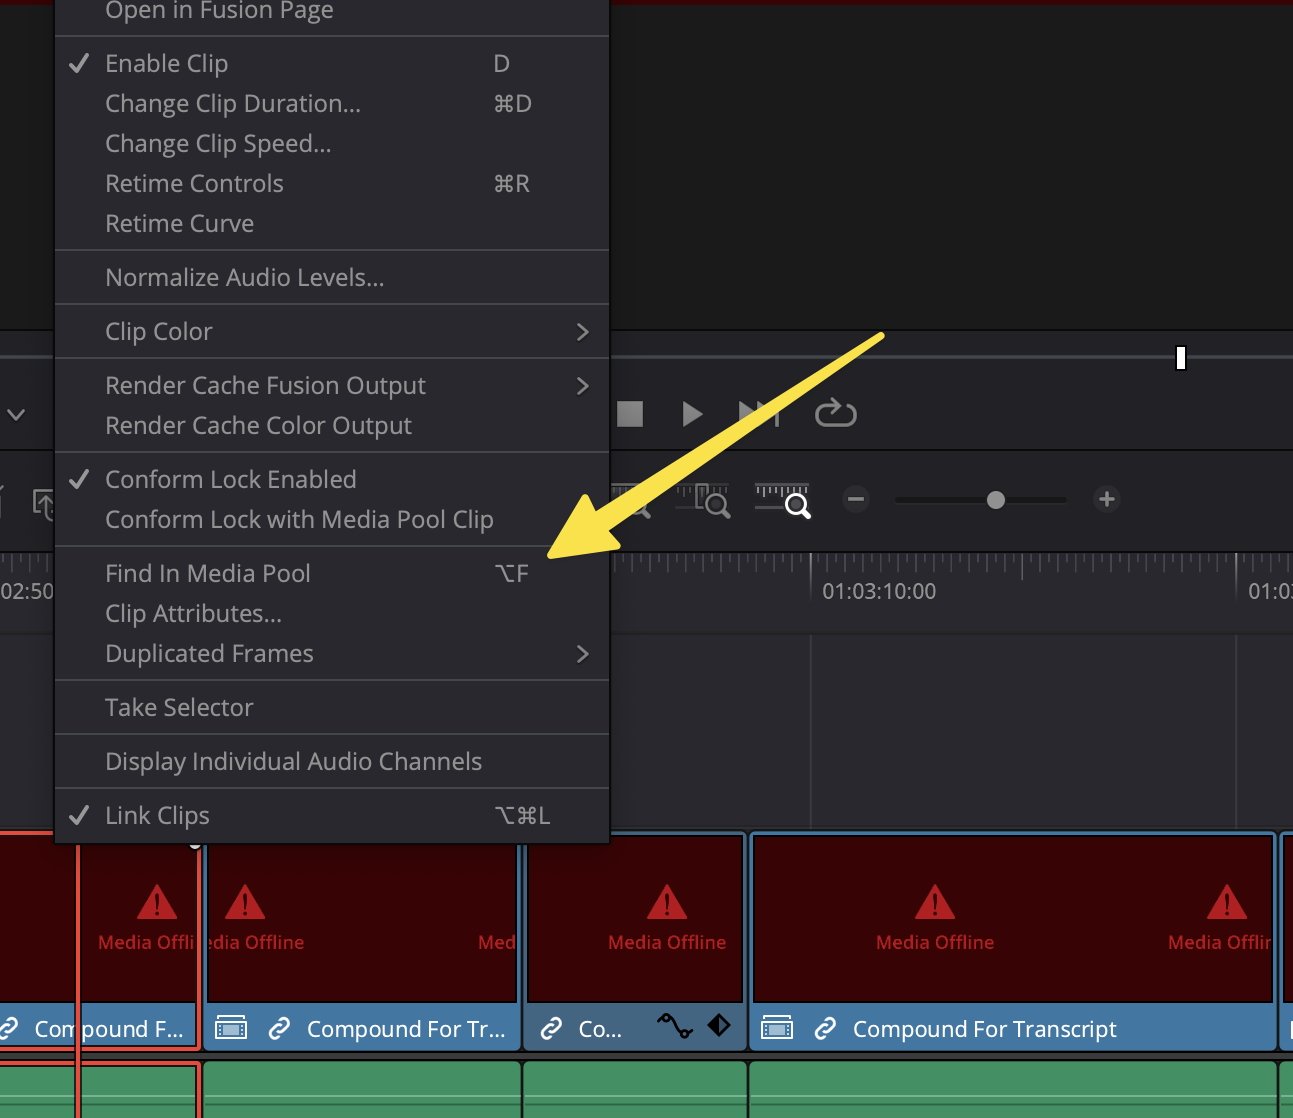 Скриншот интерфейса программы для редактирования видео с временной шкалой, меню инструментов и сообщениями об ошибках «Медиа в автономном режиме» на миниатюрах клипов.